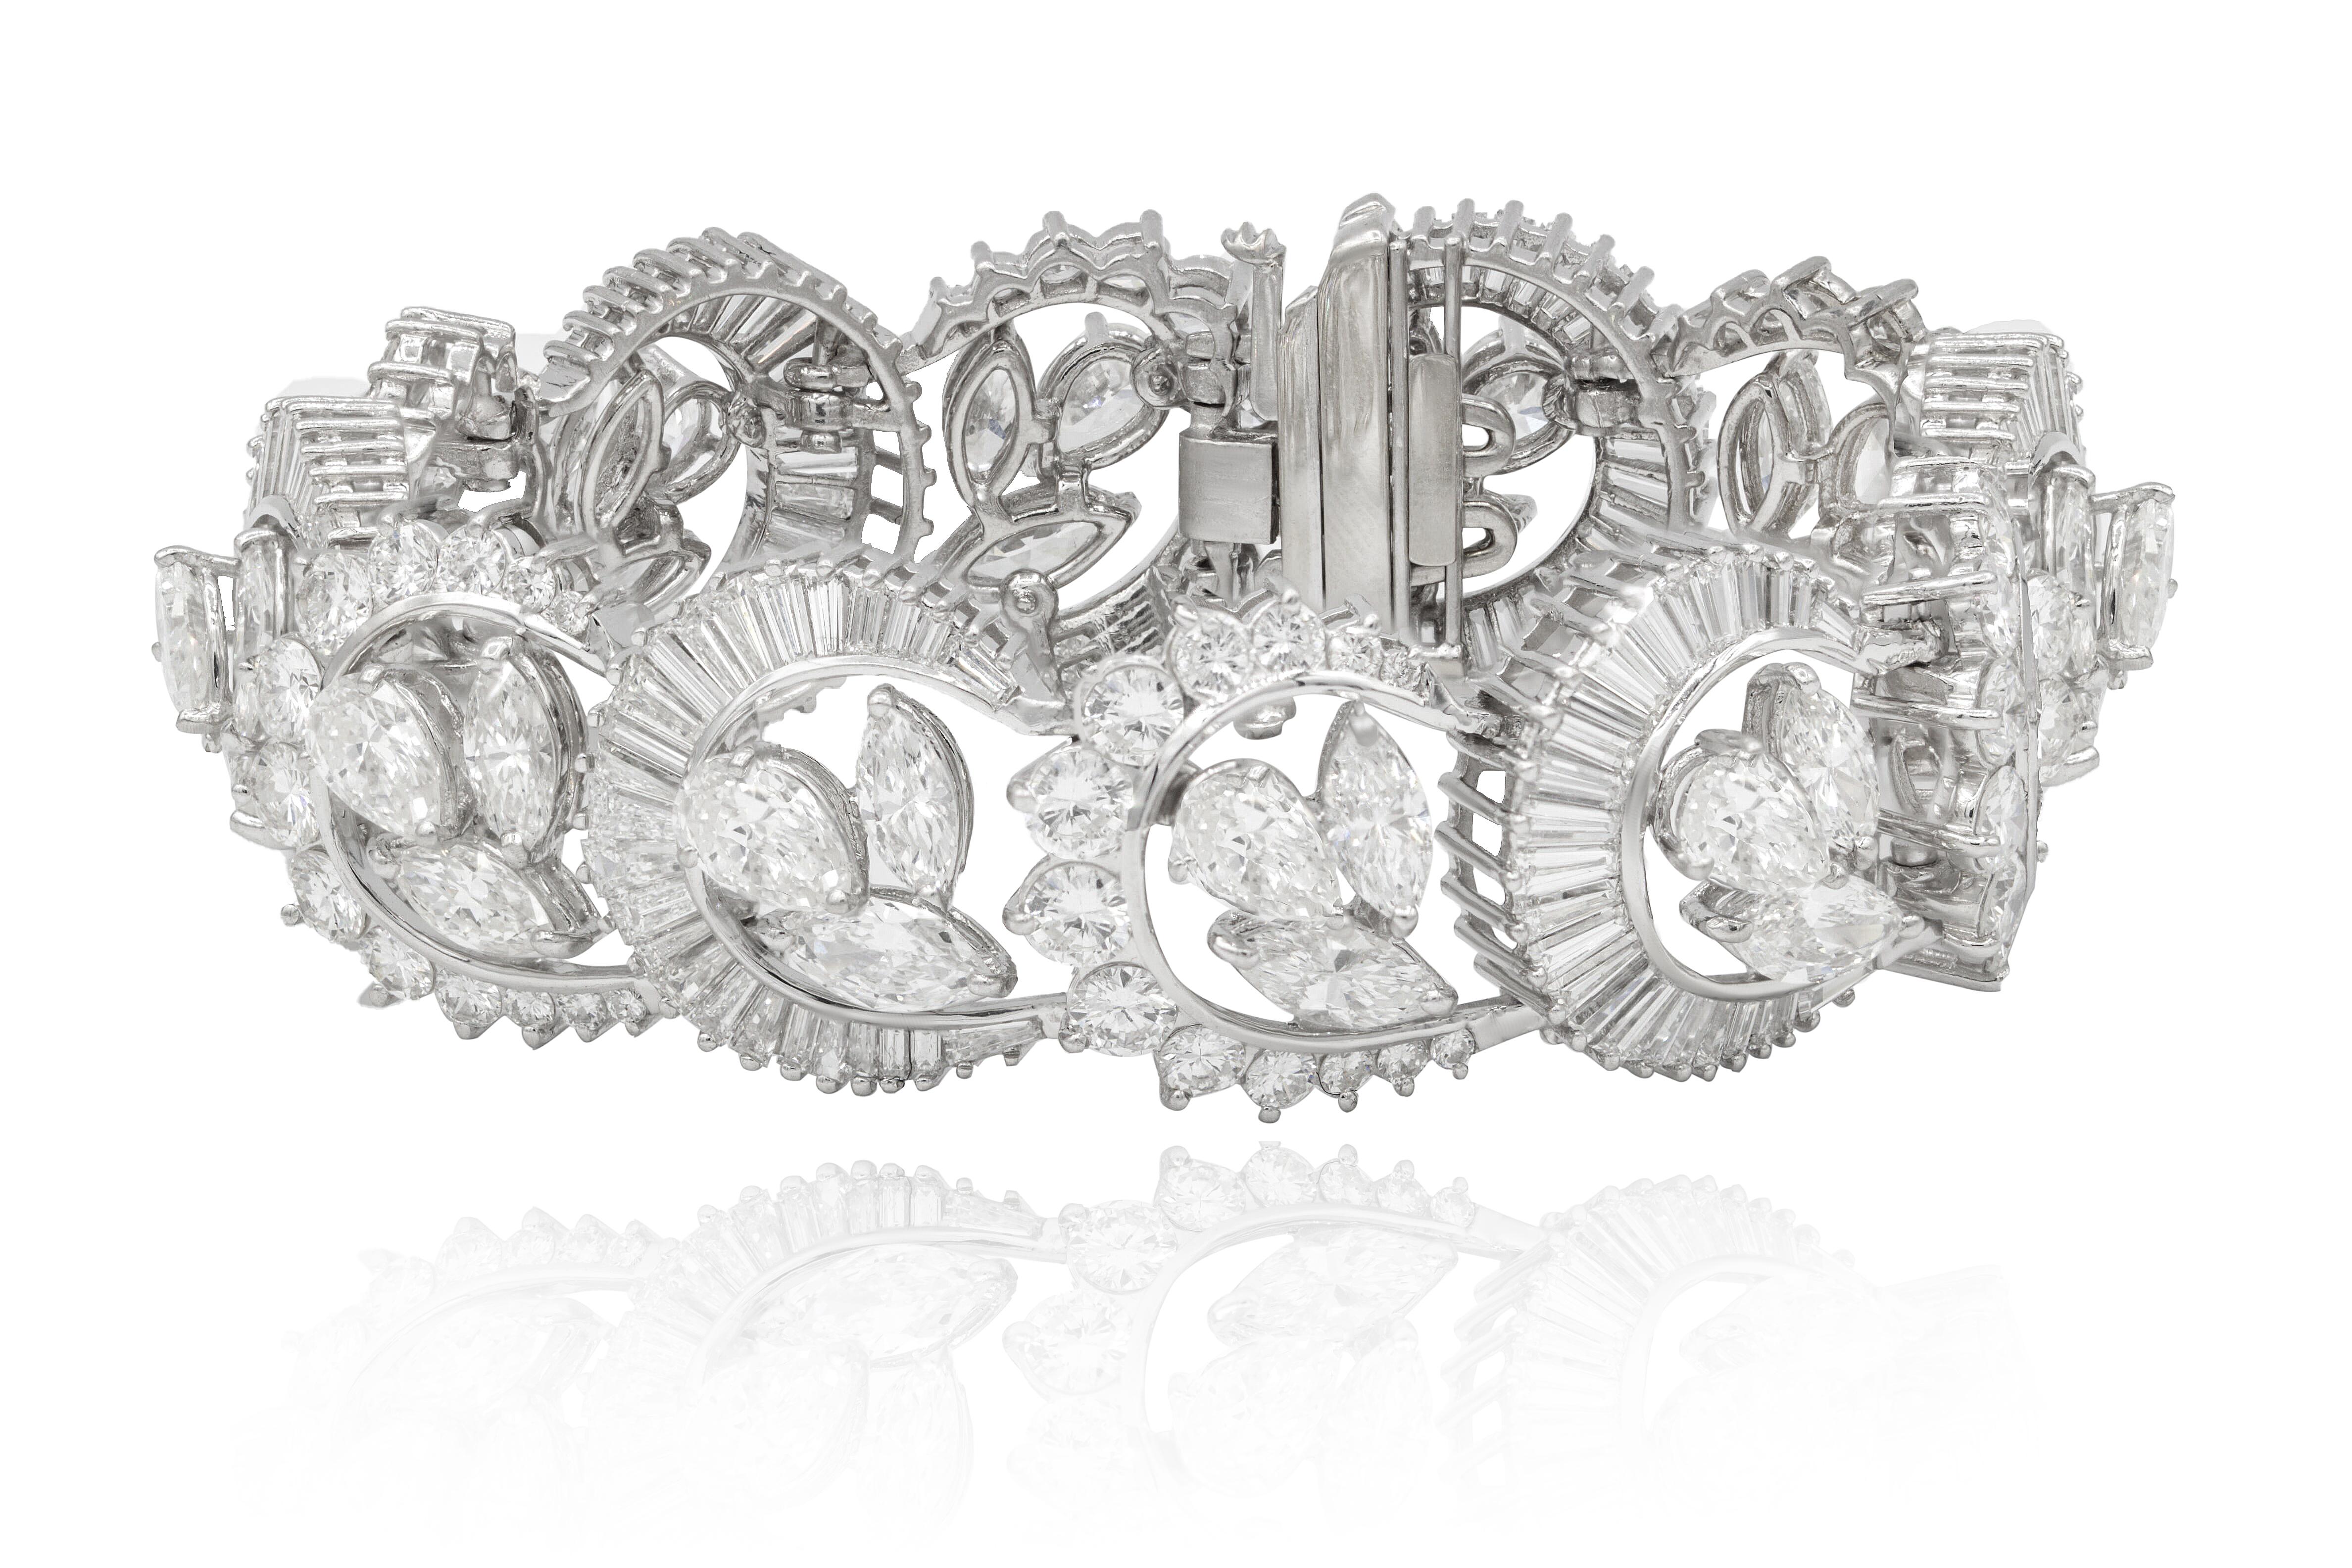 Bracelet de mode en platine orné de 37,00 cts de diamants demi-lune, ronds, baguettes, poires et marquises.
A&M est un fournisseur de premier plan de bijoux fins de qualité supérieure depuis plus de 35 ans.
Diana M-One est un magasin unique pour